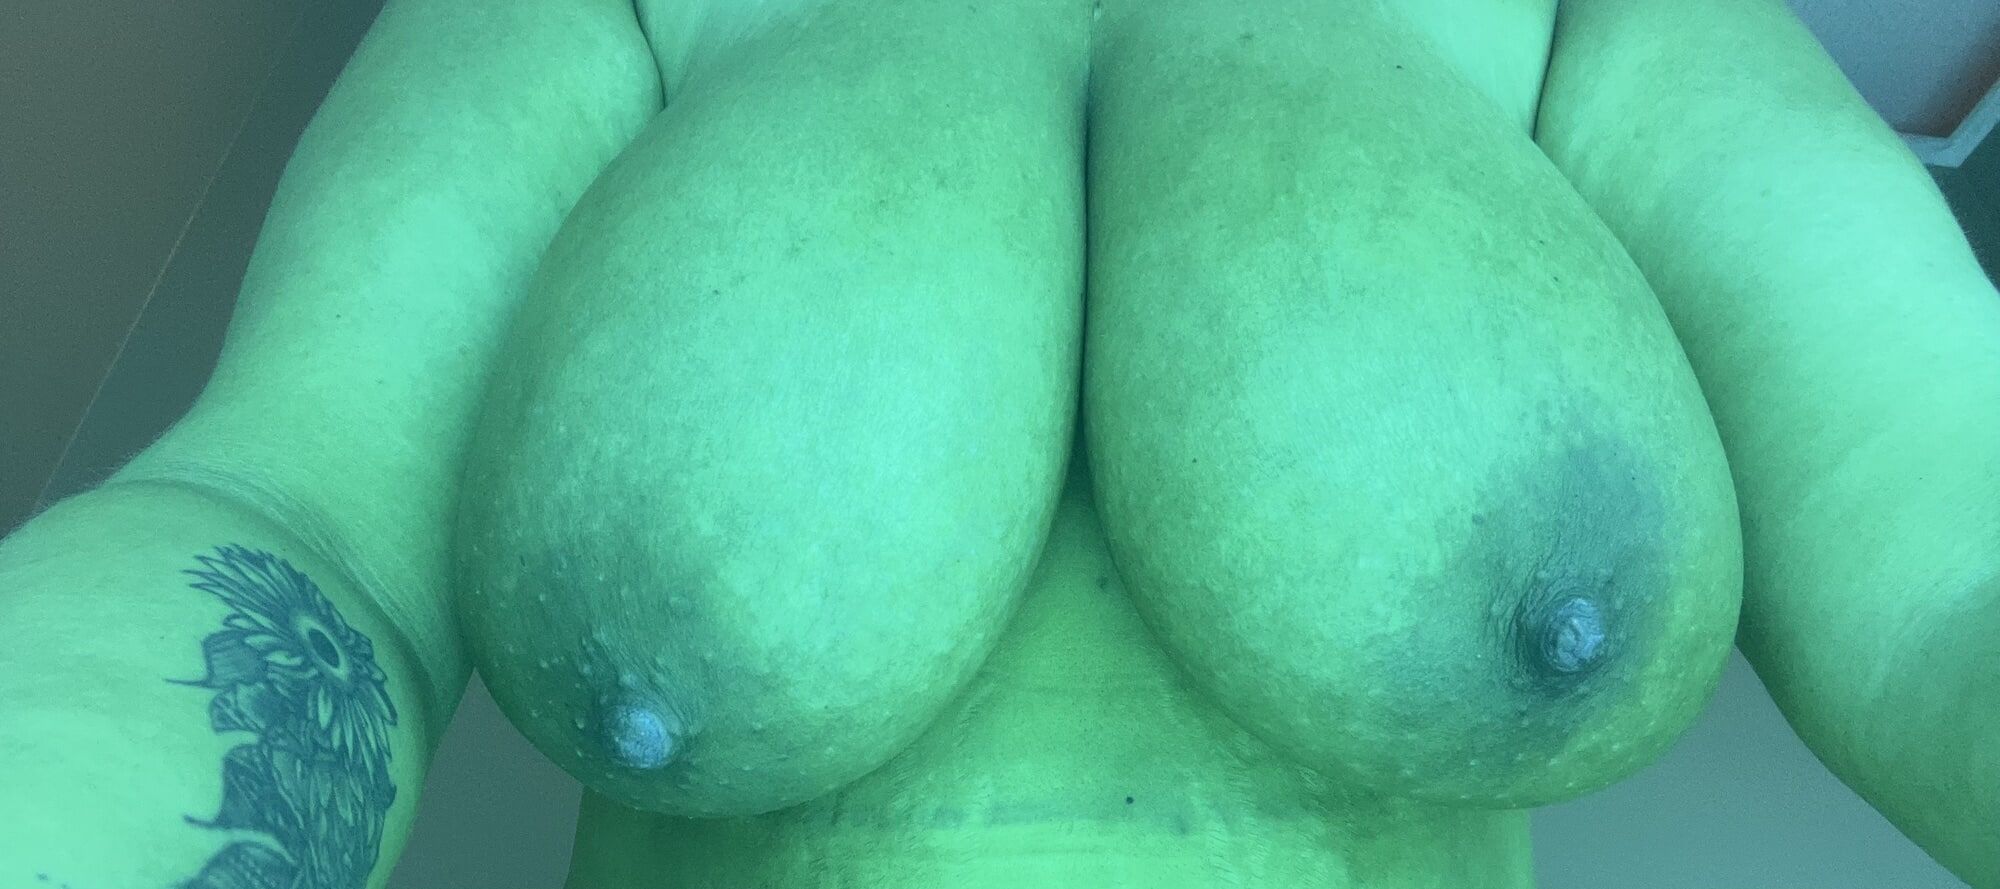 My natural tits